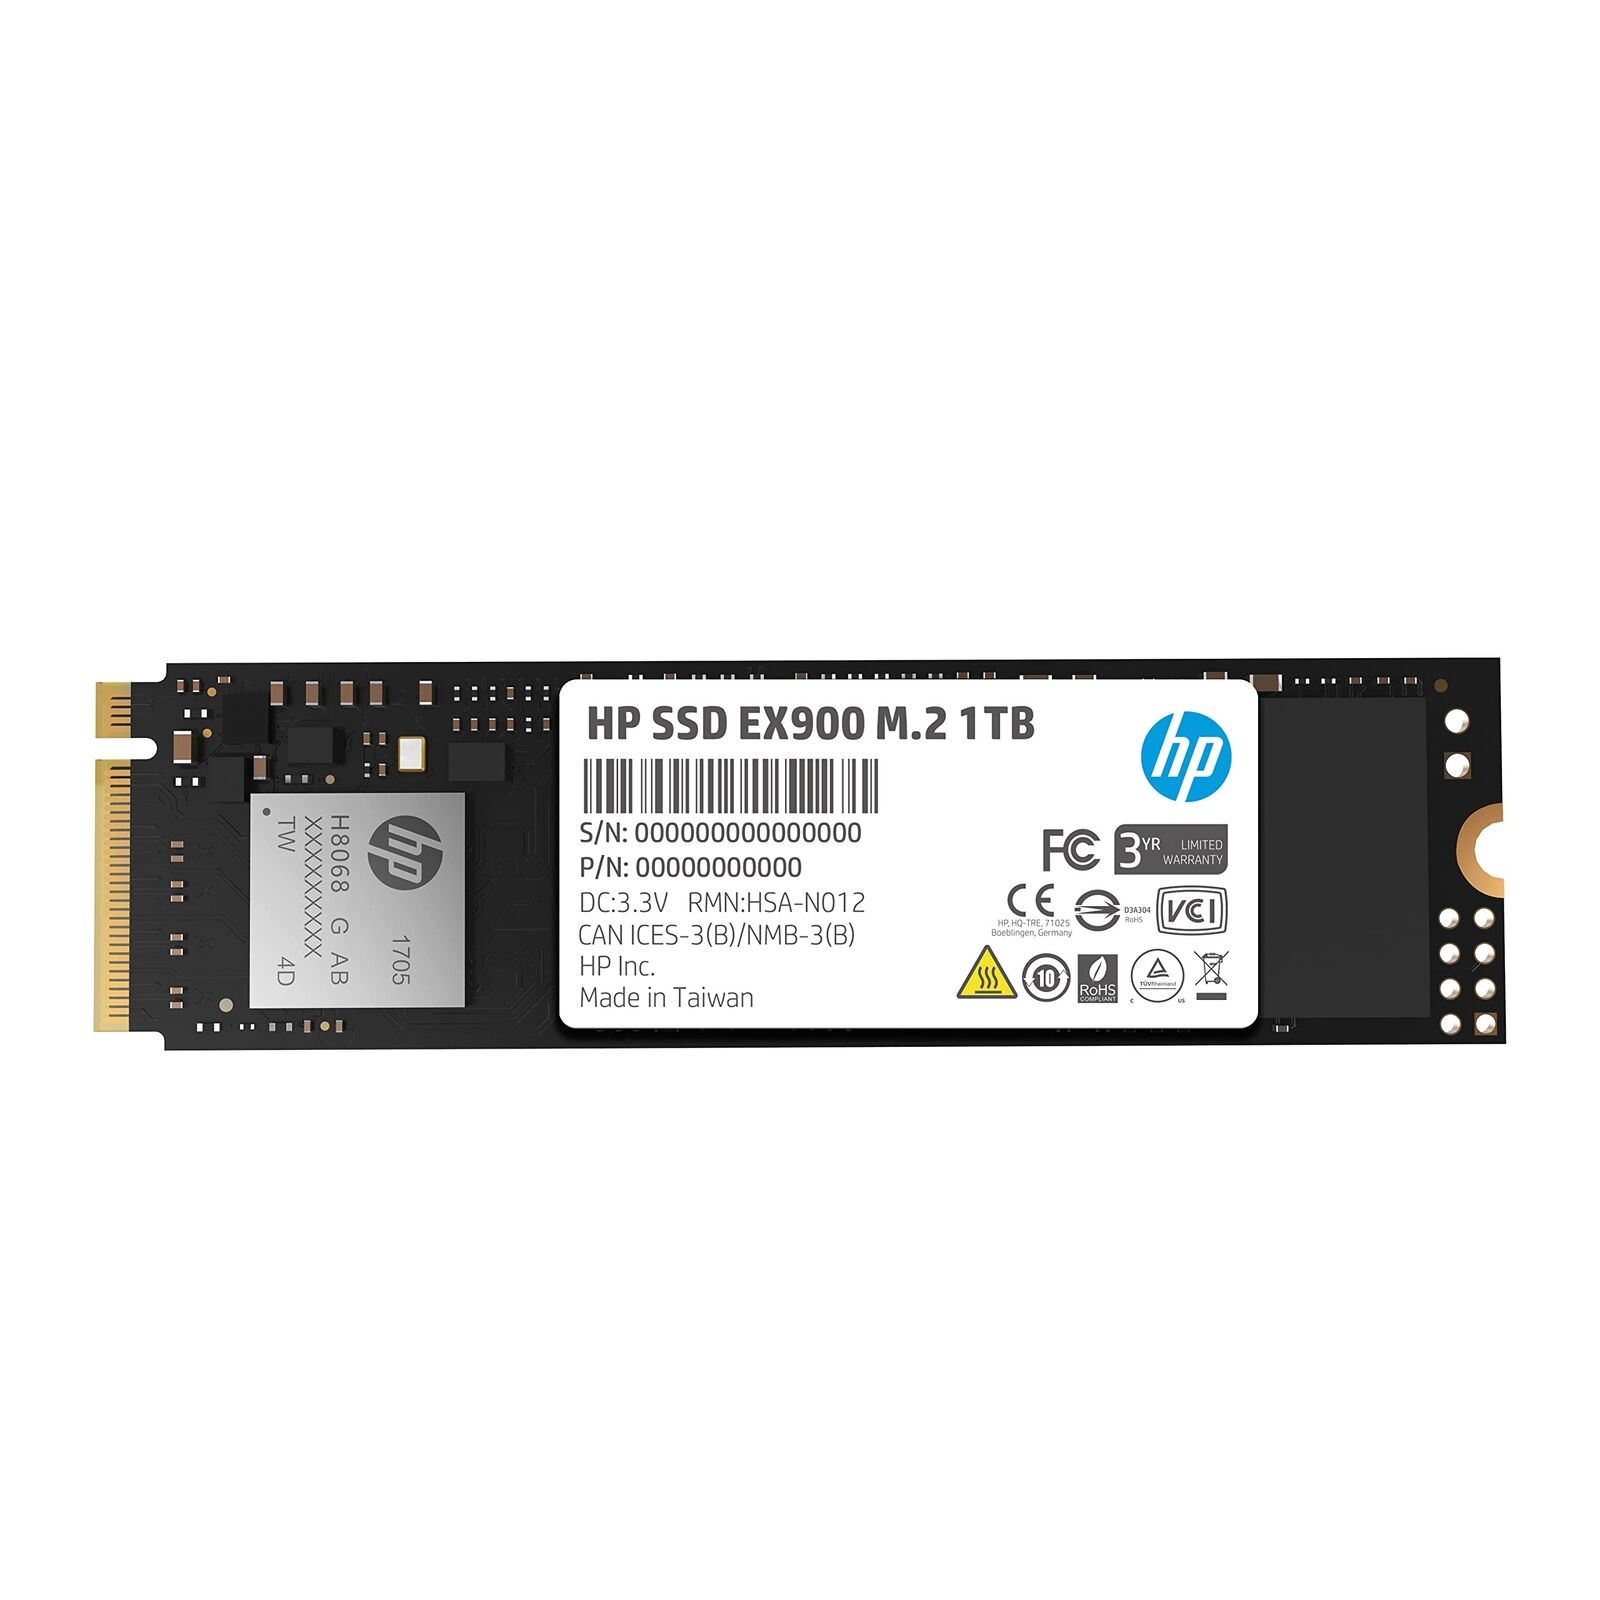 HP EX900 M.2 - 1TB - PCI-Express 3.0 x4 3D TLC Internal SSD - 5XM46AA#ABC